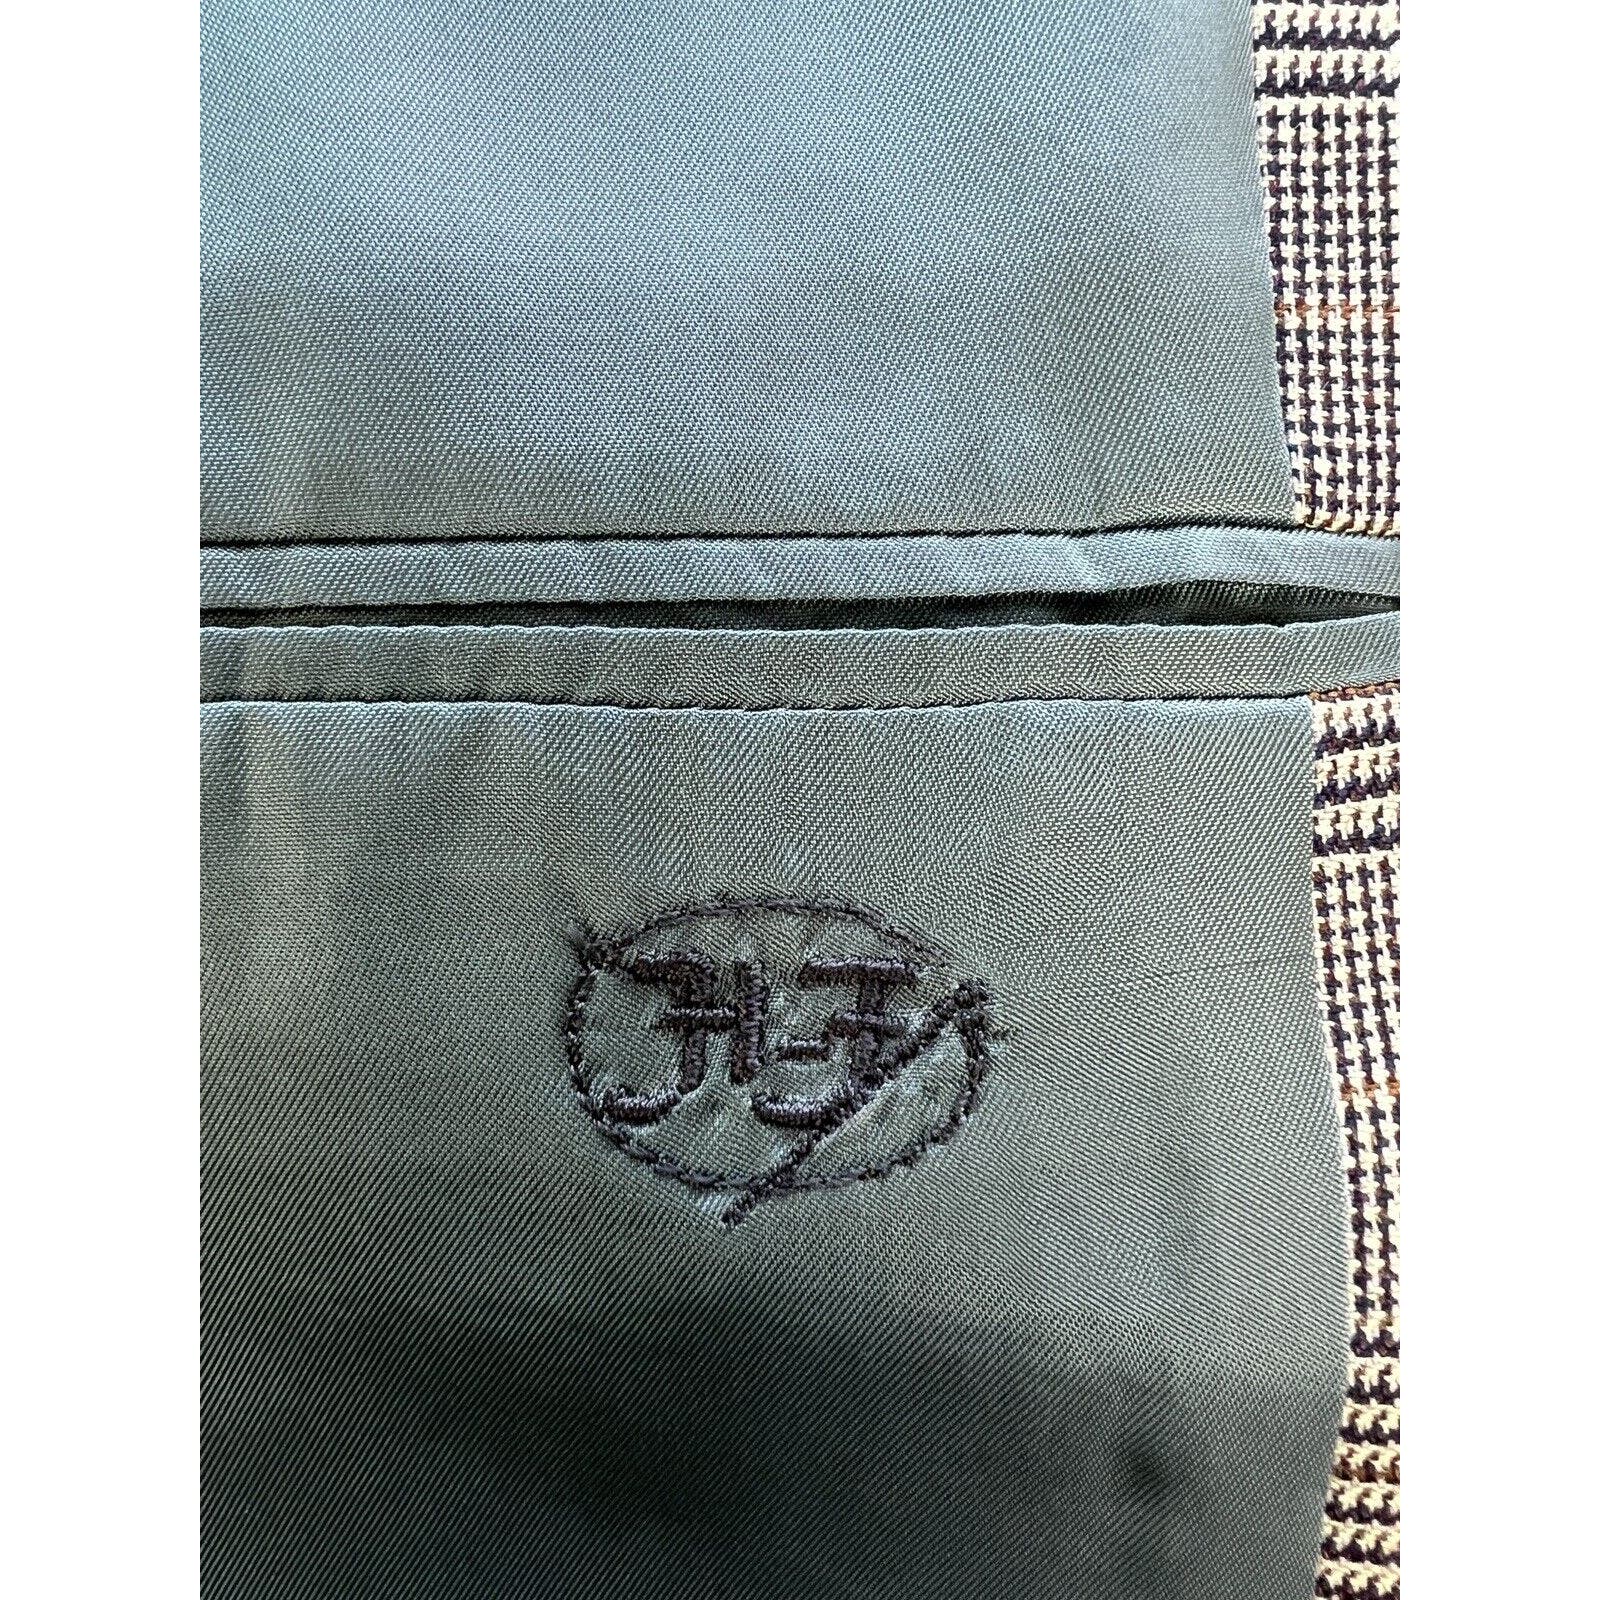 Hickey Freeman For Bergdorf Goodman 3 Button Blazer Men’s 38L Plaid Beige Jacket